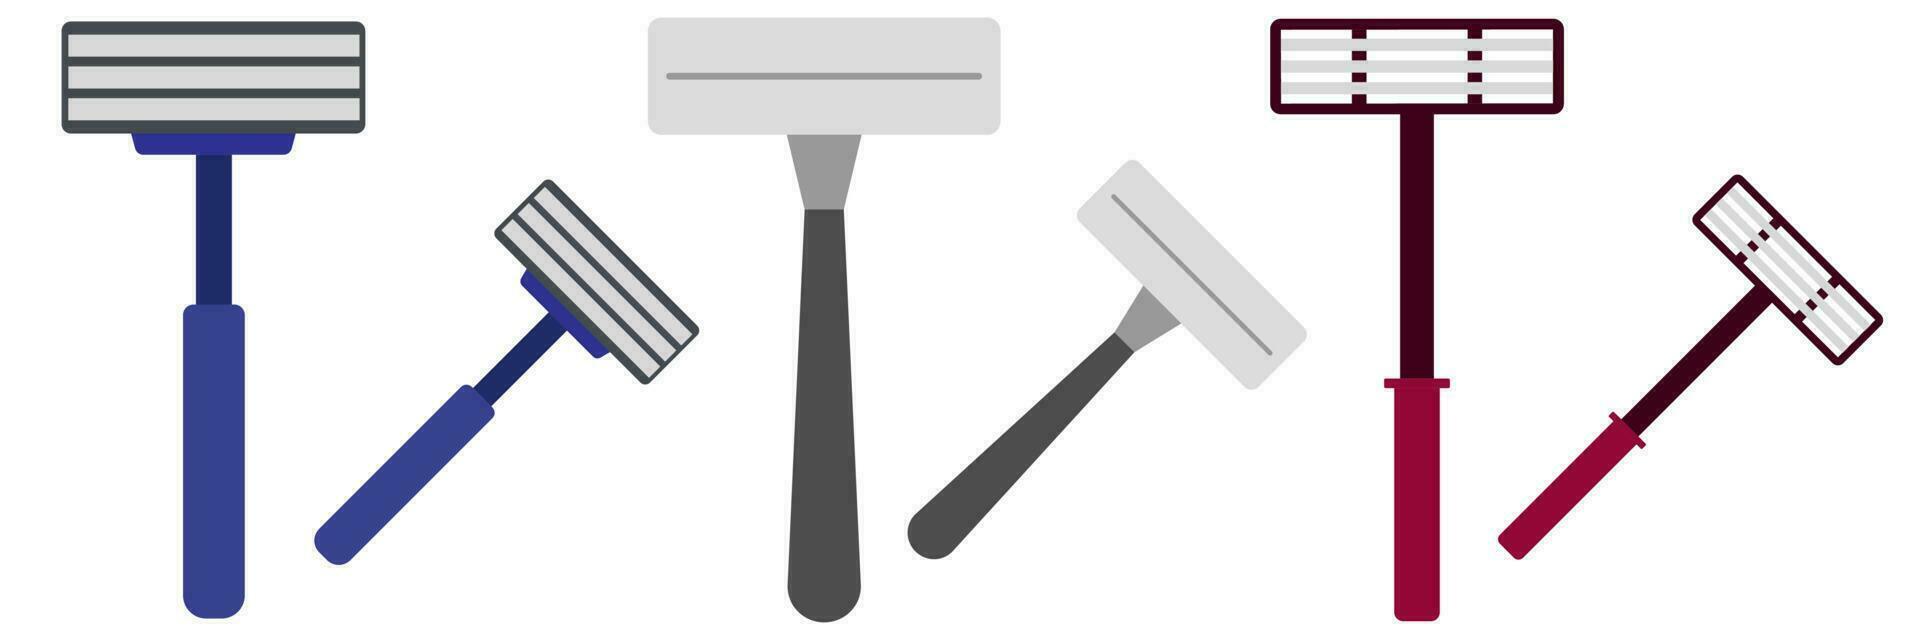 Derecho maquinilla de afeitar icono colocar. moderno, minimalista elegante colores. vector ilustración. afeitado espada en Barbero tienda.